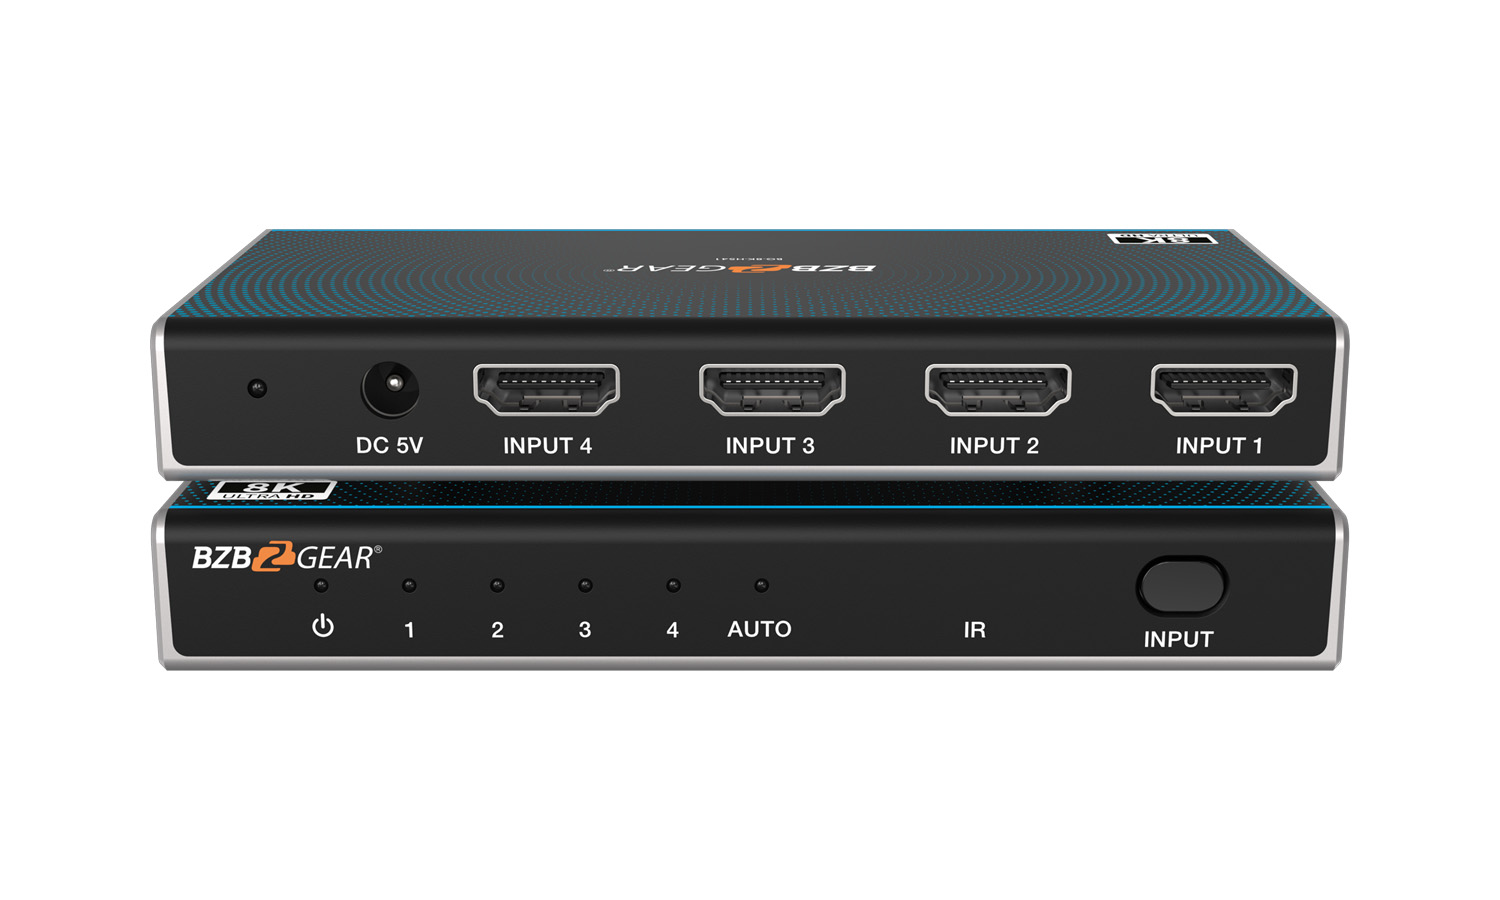 BG-8K-HS41 4x1 8K UHD Ultra Slim HDMI 2.1 Switcher (8K60, 4K120Hz 4:4:4 10bit) by BZBGEAR